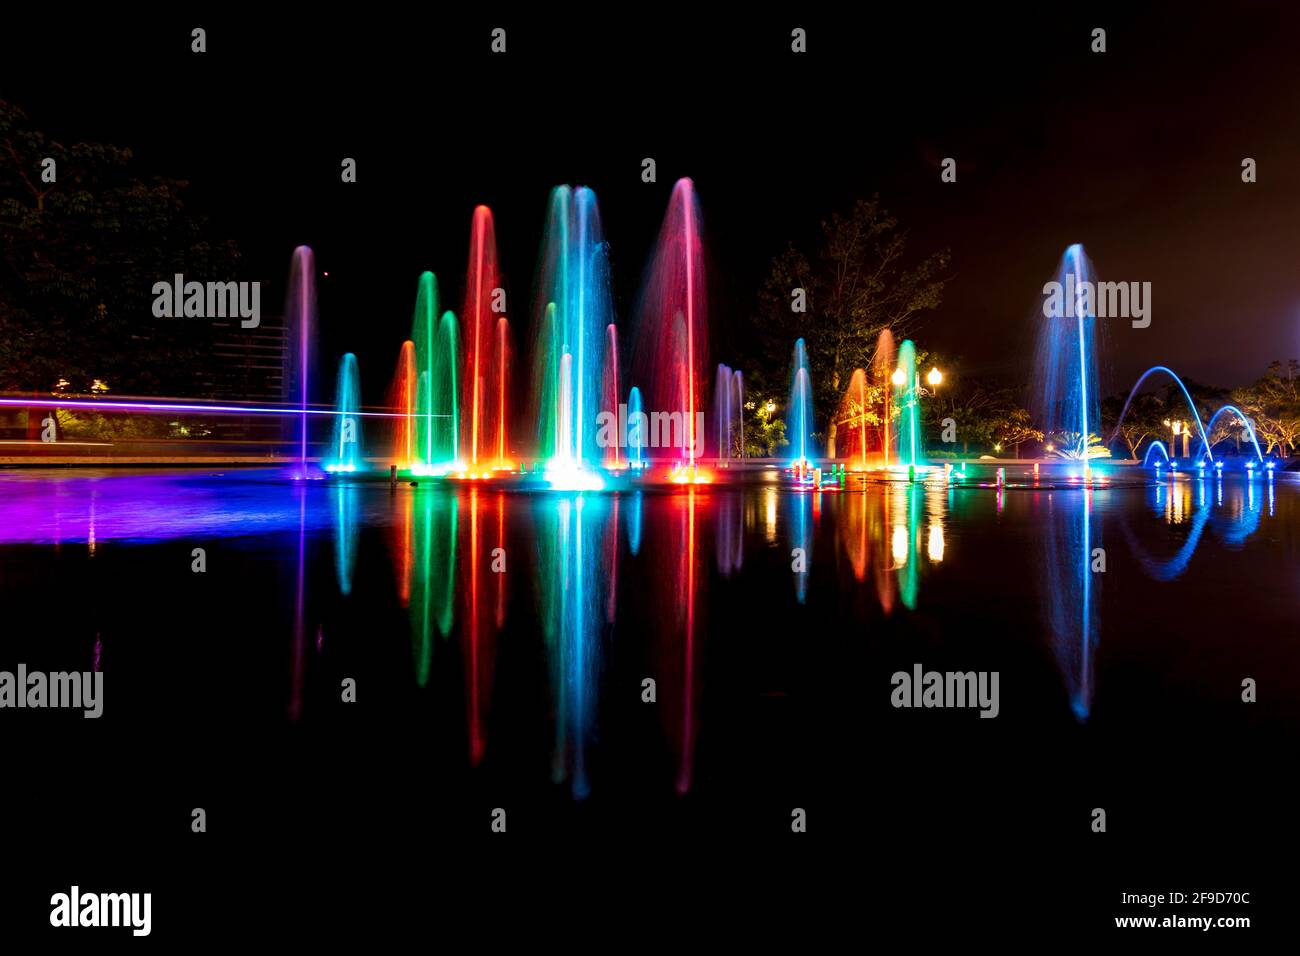 Langzeitbelichtung eines bunten Springbrunnens im Freien - Wasser und Licht bewegen sich zur Musik - einzigartiges Einkaufserlebnis in Merida, Mexiko Stockfoto